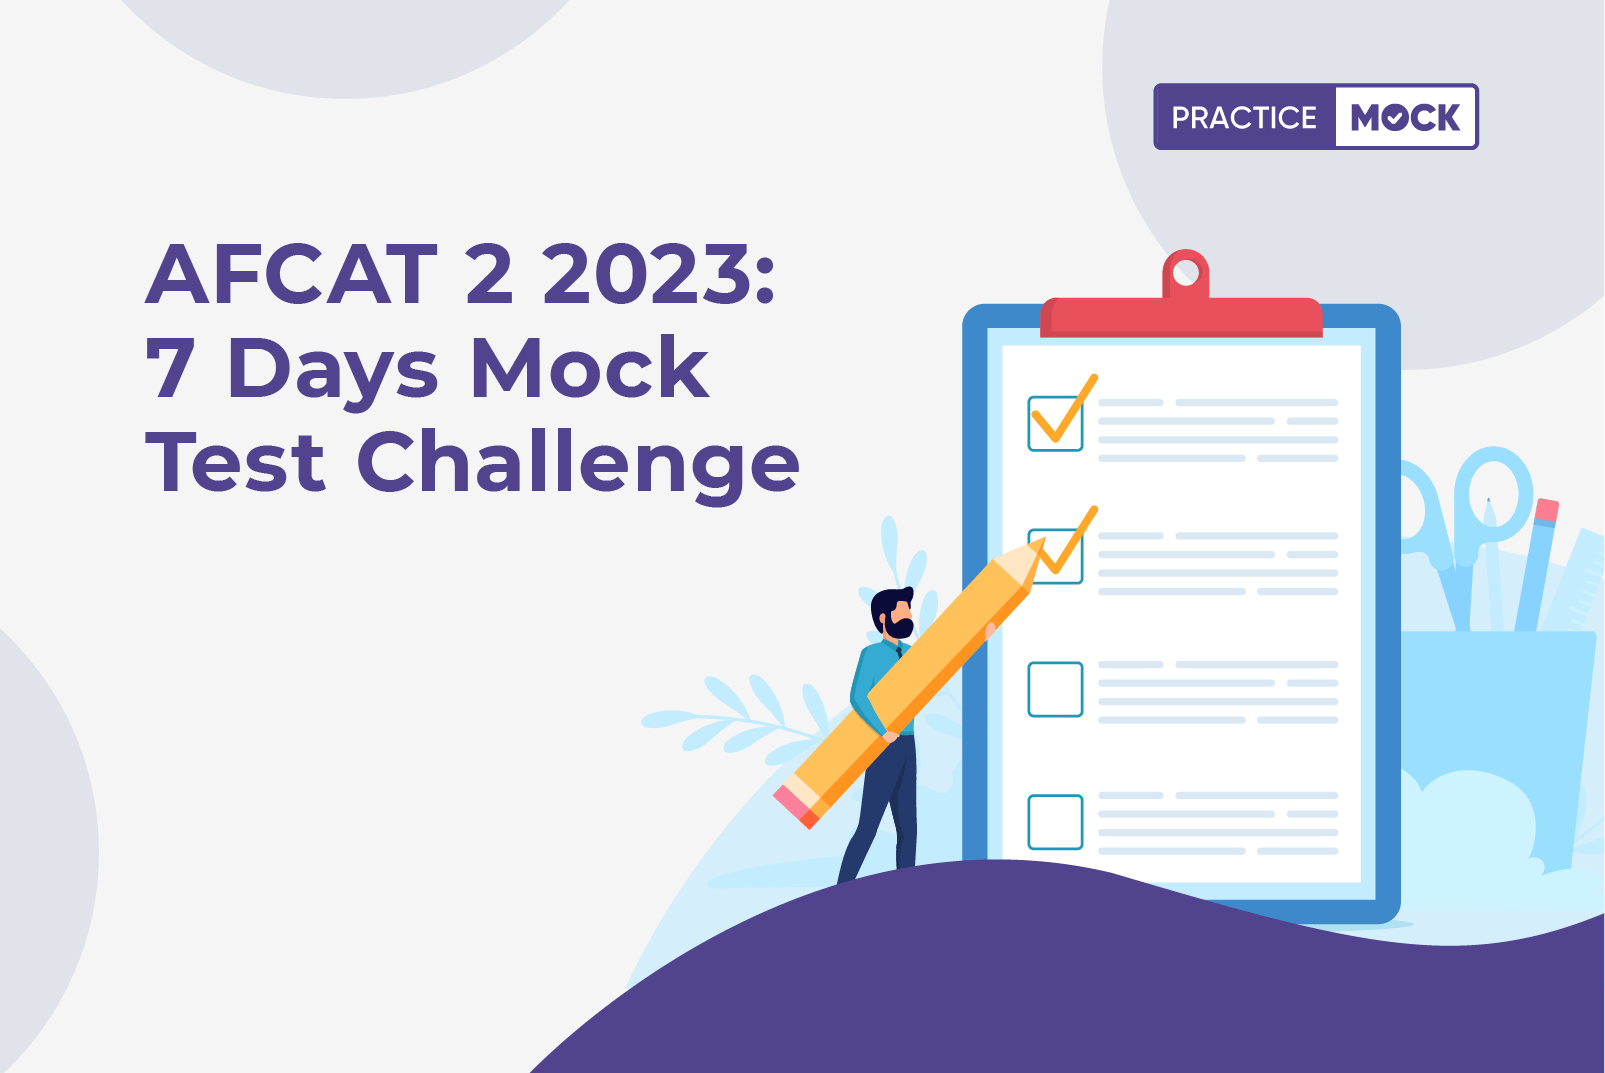 AFCAT 2 2023: 7 Days Mock Test Challenge